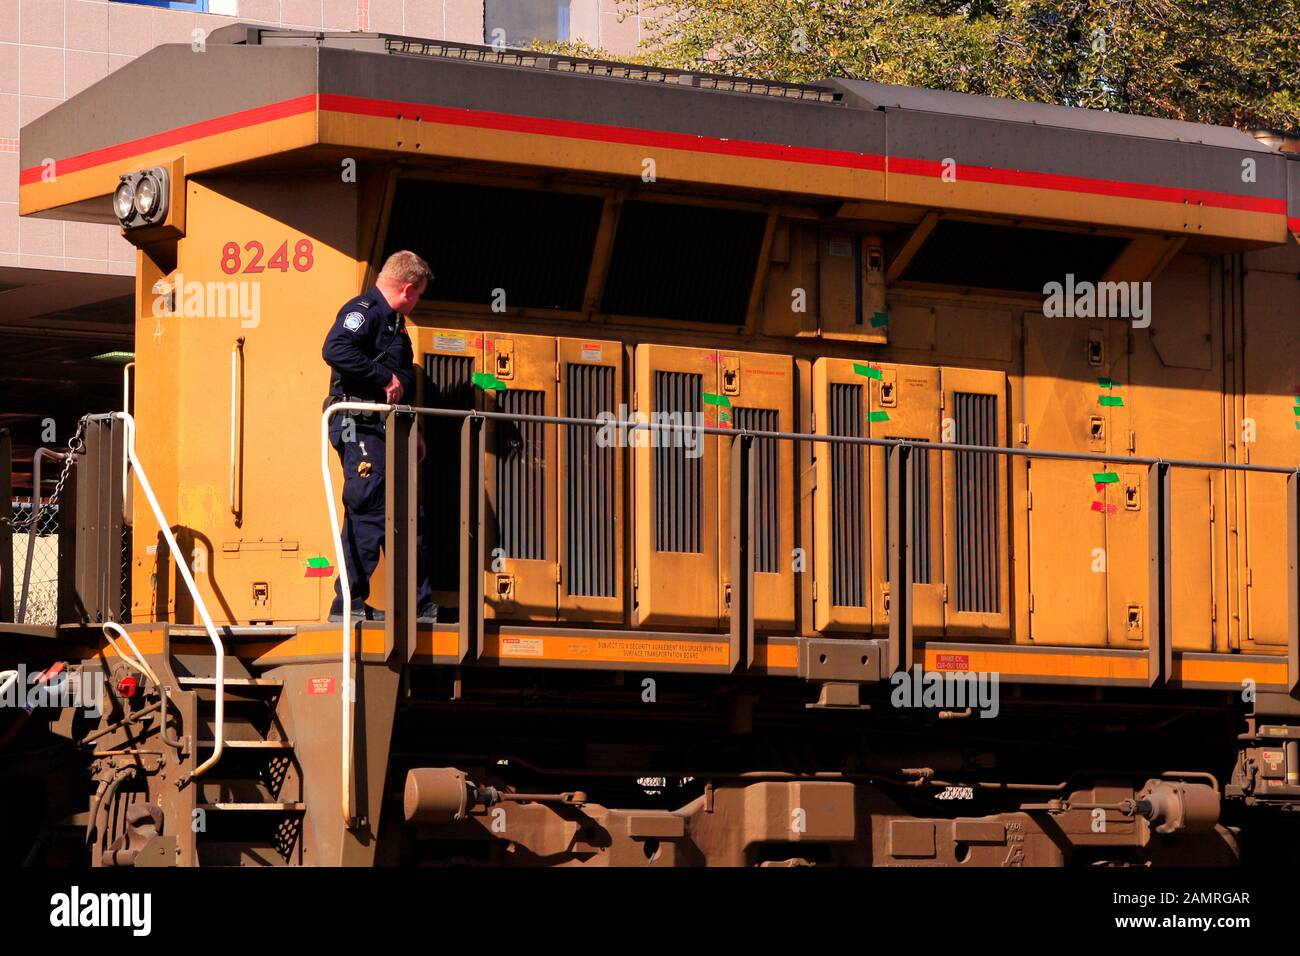 Agent des douanes et de la protection des frontières des États-Unis qui contrôle tous les verrous des compartiments d'une locomotive Amtrak lorsqu'elle passe par la frontière américano-mexicaine dans non Banque D'Images